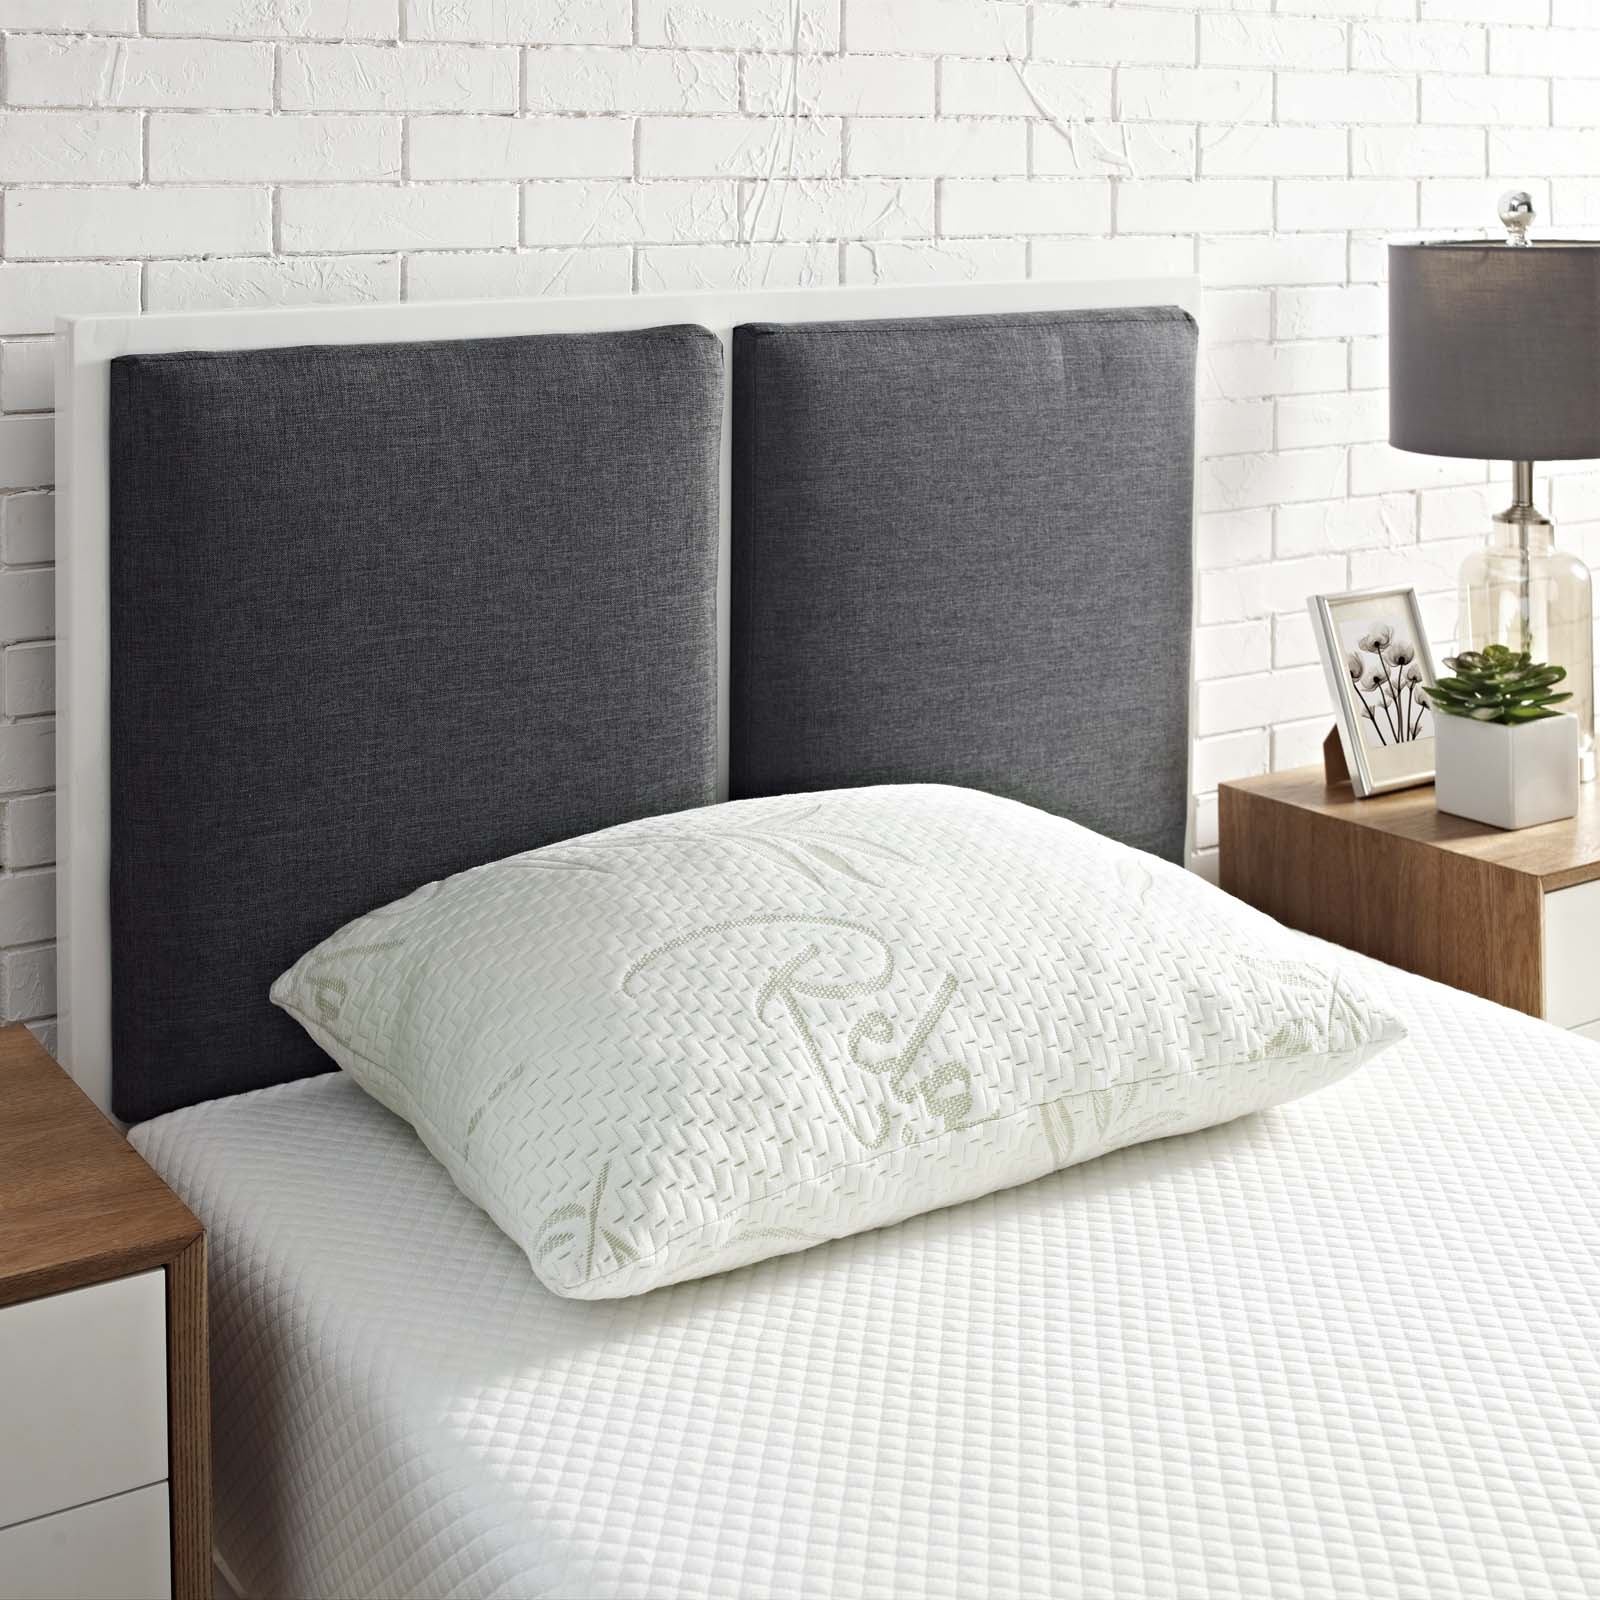 Modway Pillows - Relax Standard Queen Pillow White